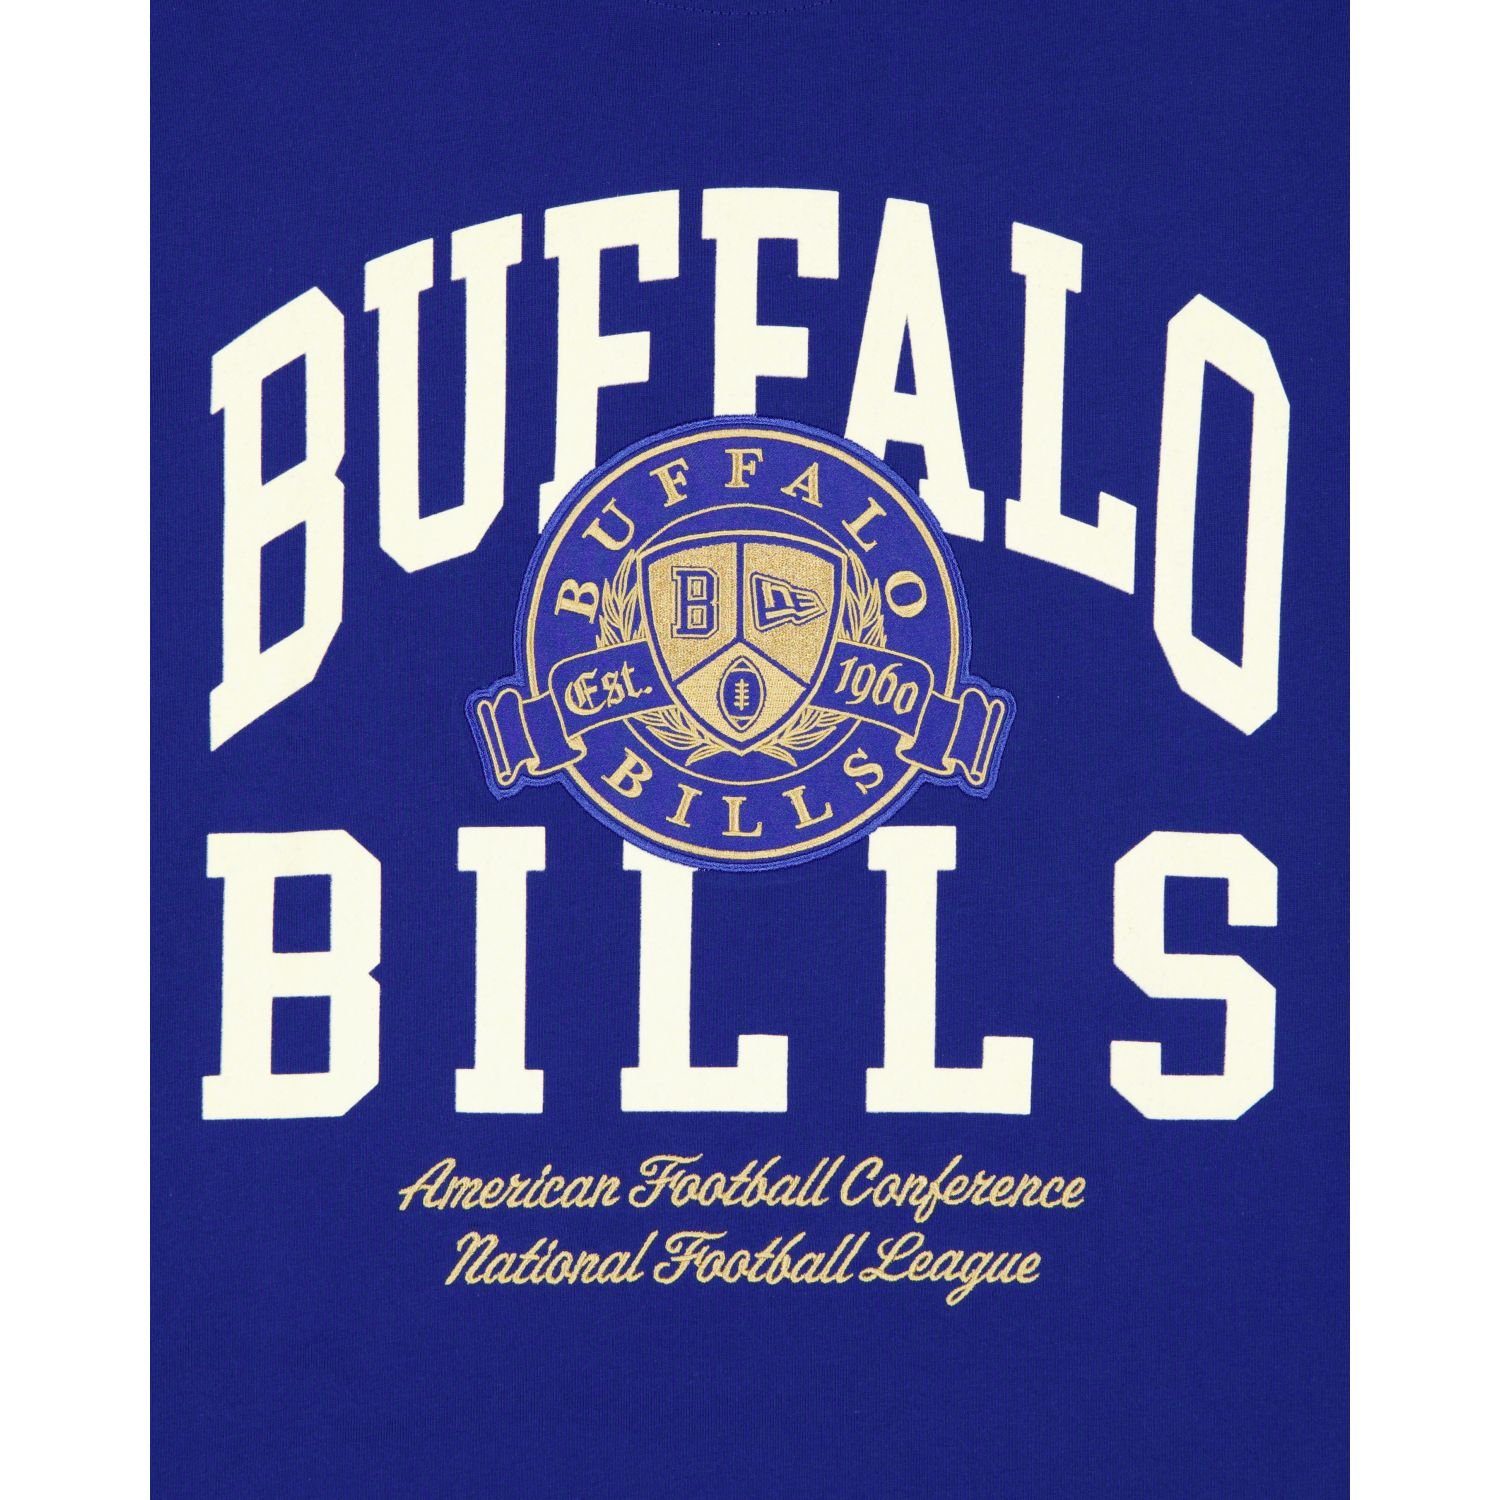 LETTERMAN Print-Shirt New Bills NFL Era Buffalo